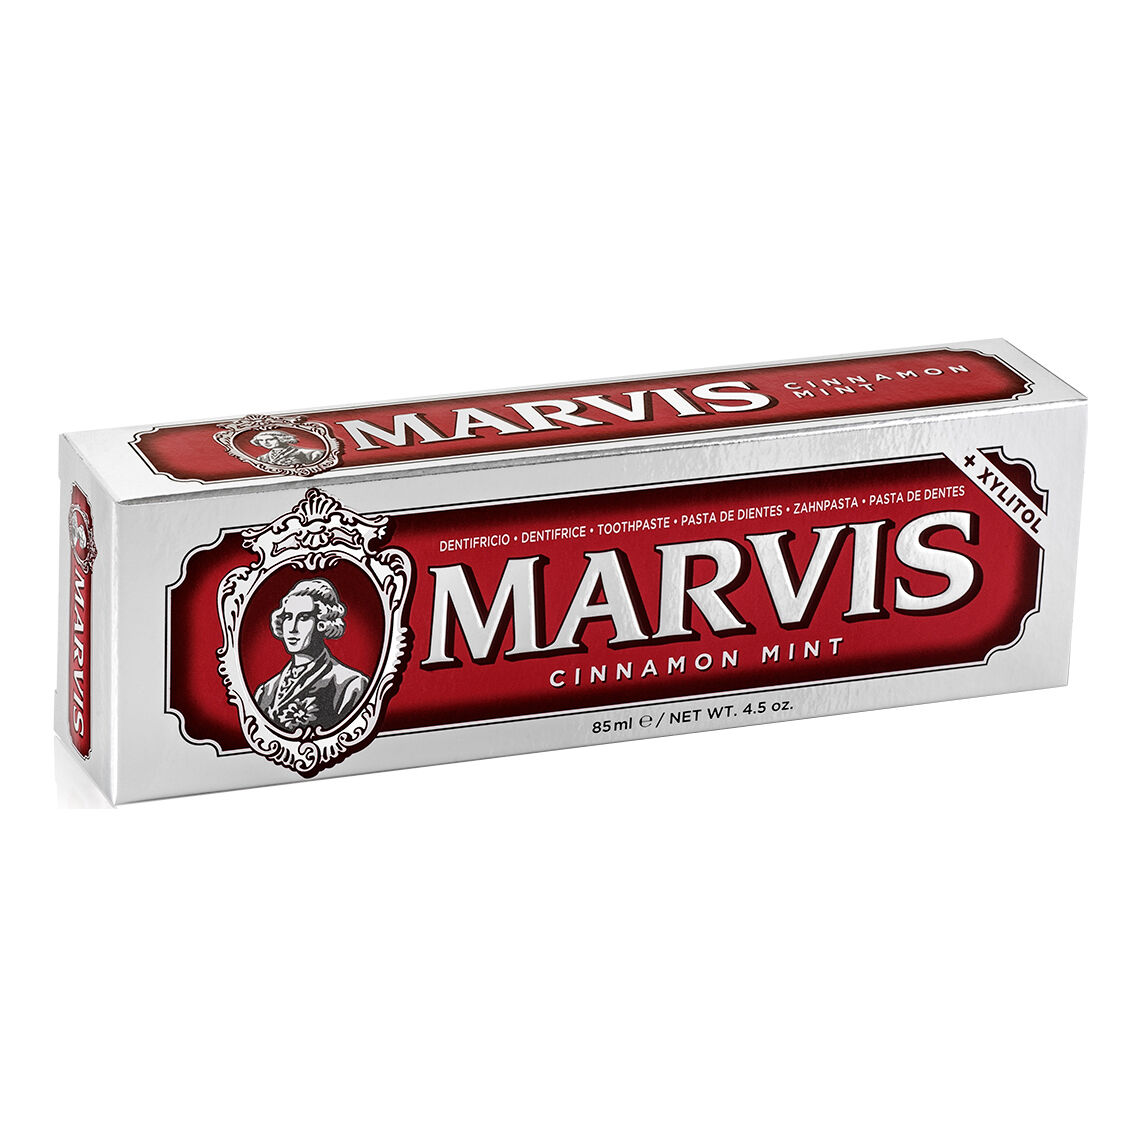 Farvisan Marvis Dent.Cinnamon 85ml